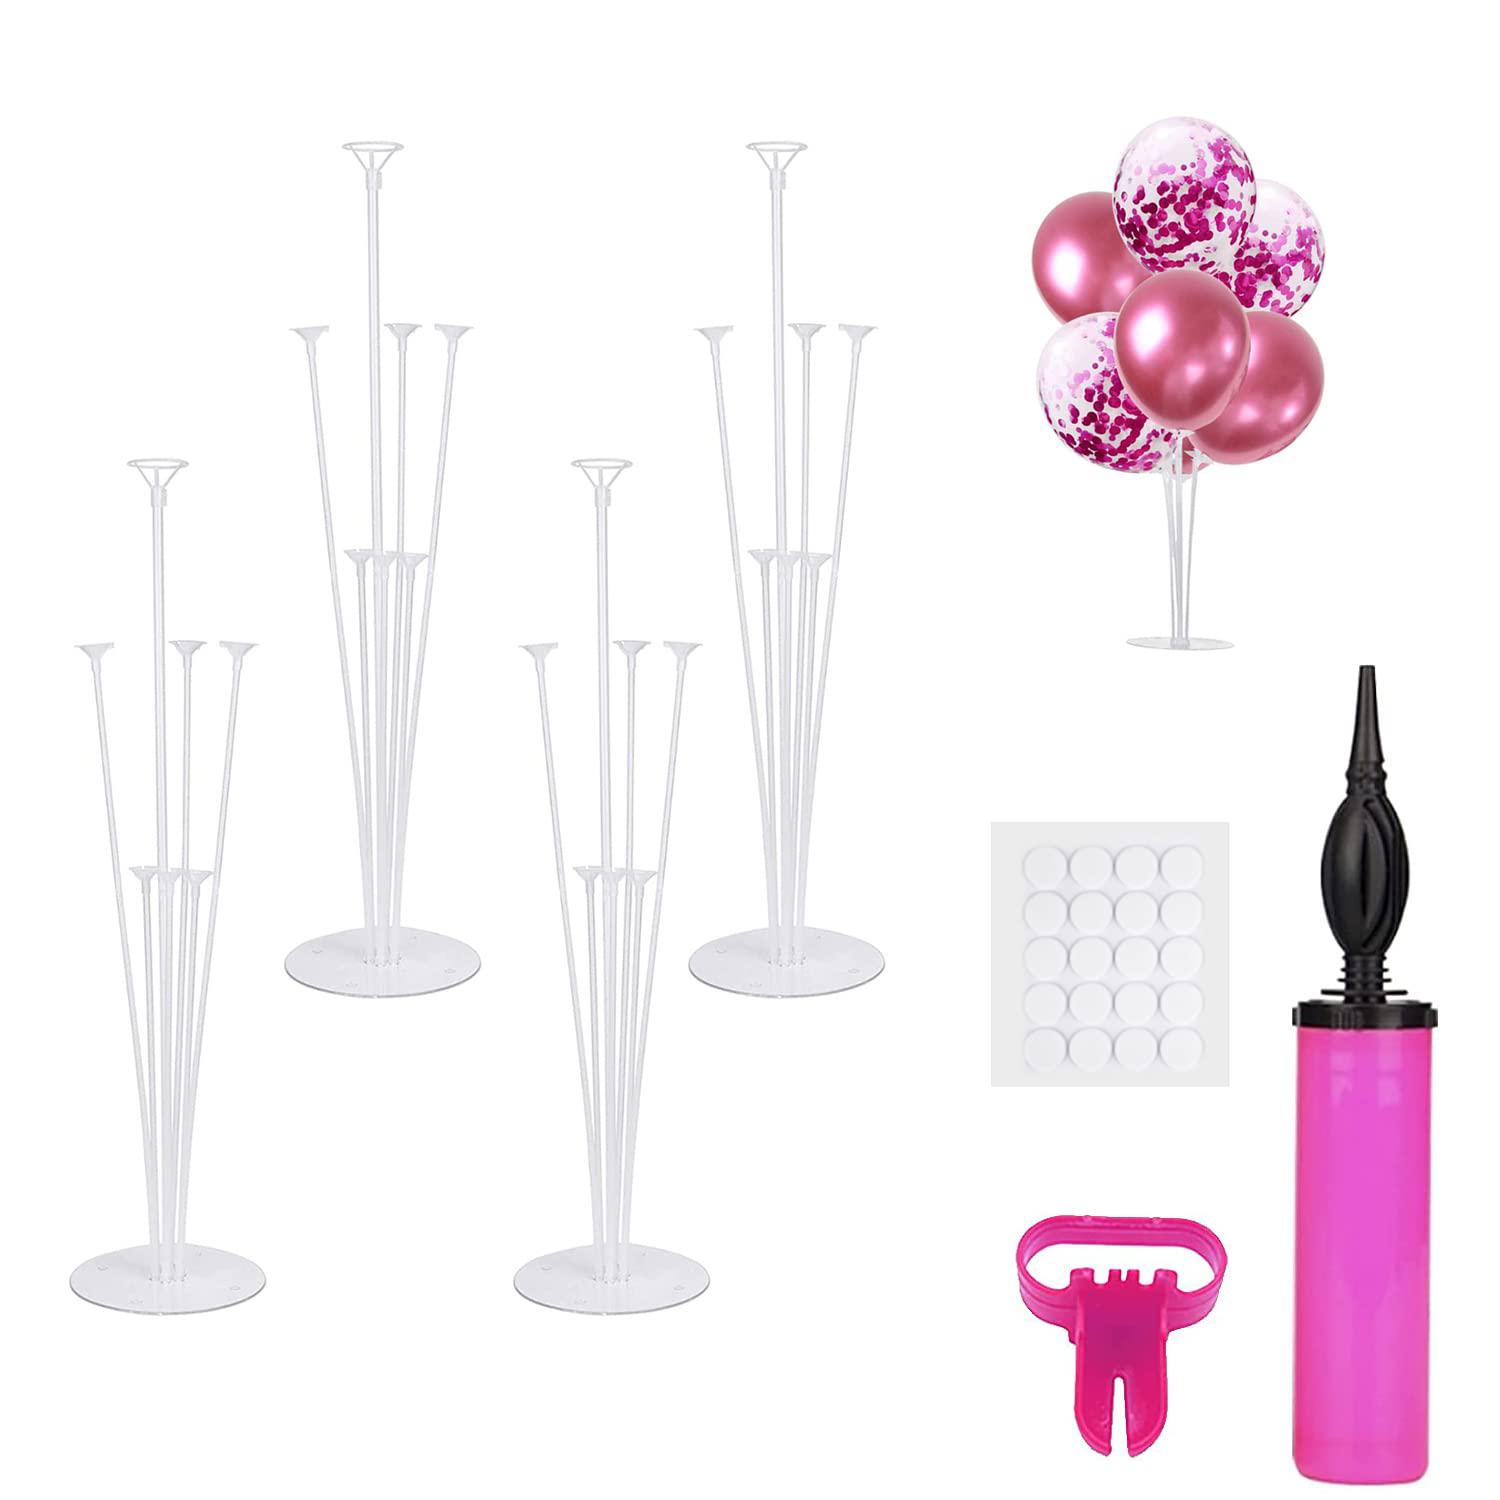 ceither table balloon stand kit, (4 table balloon stick holder, 1 balloon  pump, 1 balloon knotter), transparent balloon stand decorat